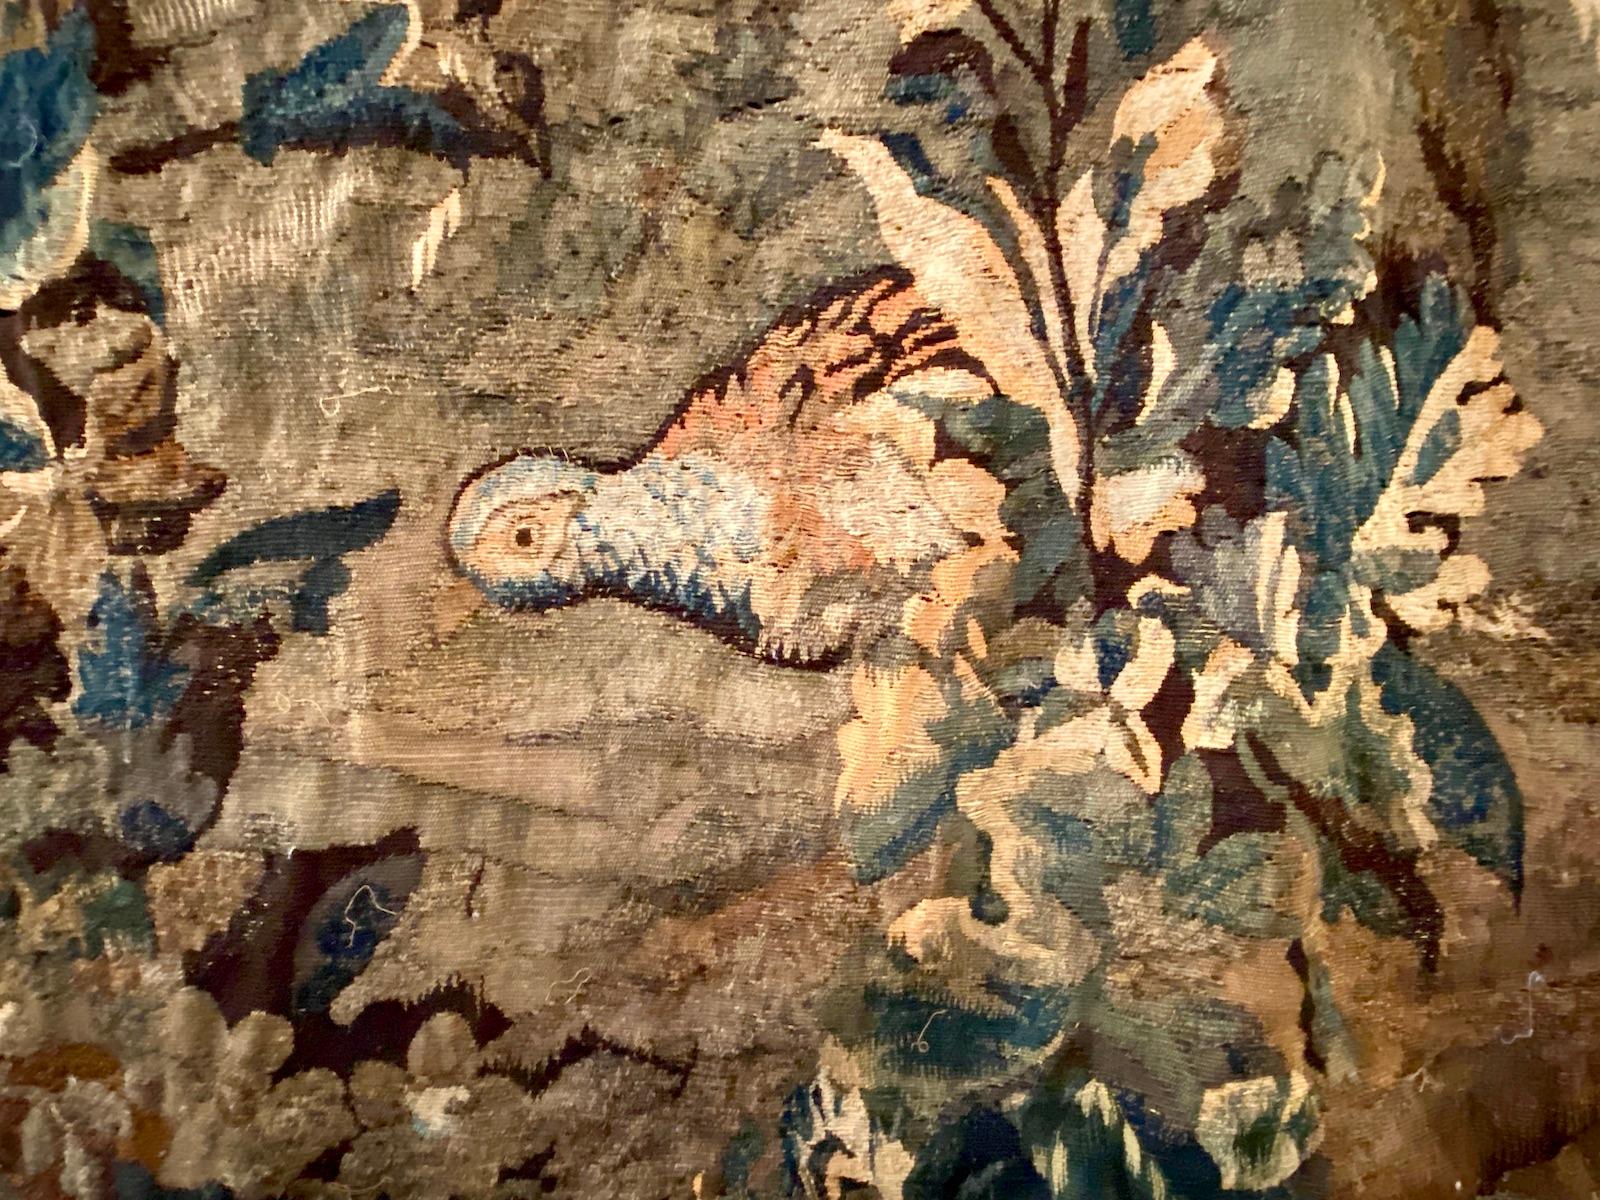 Panneau de tapisserie de verdure français du XVIIIe siècle représentant une ville sur une colline, des arbres et des animaux.

Mesures :
Hauteur : 88